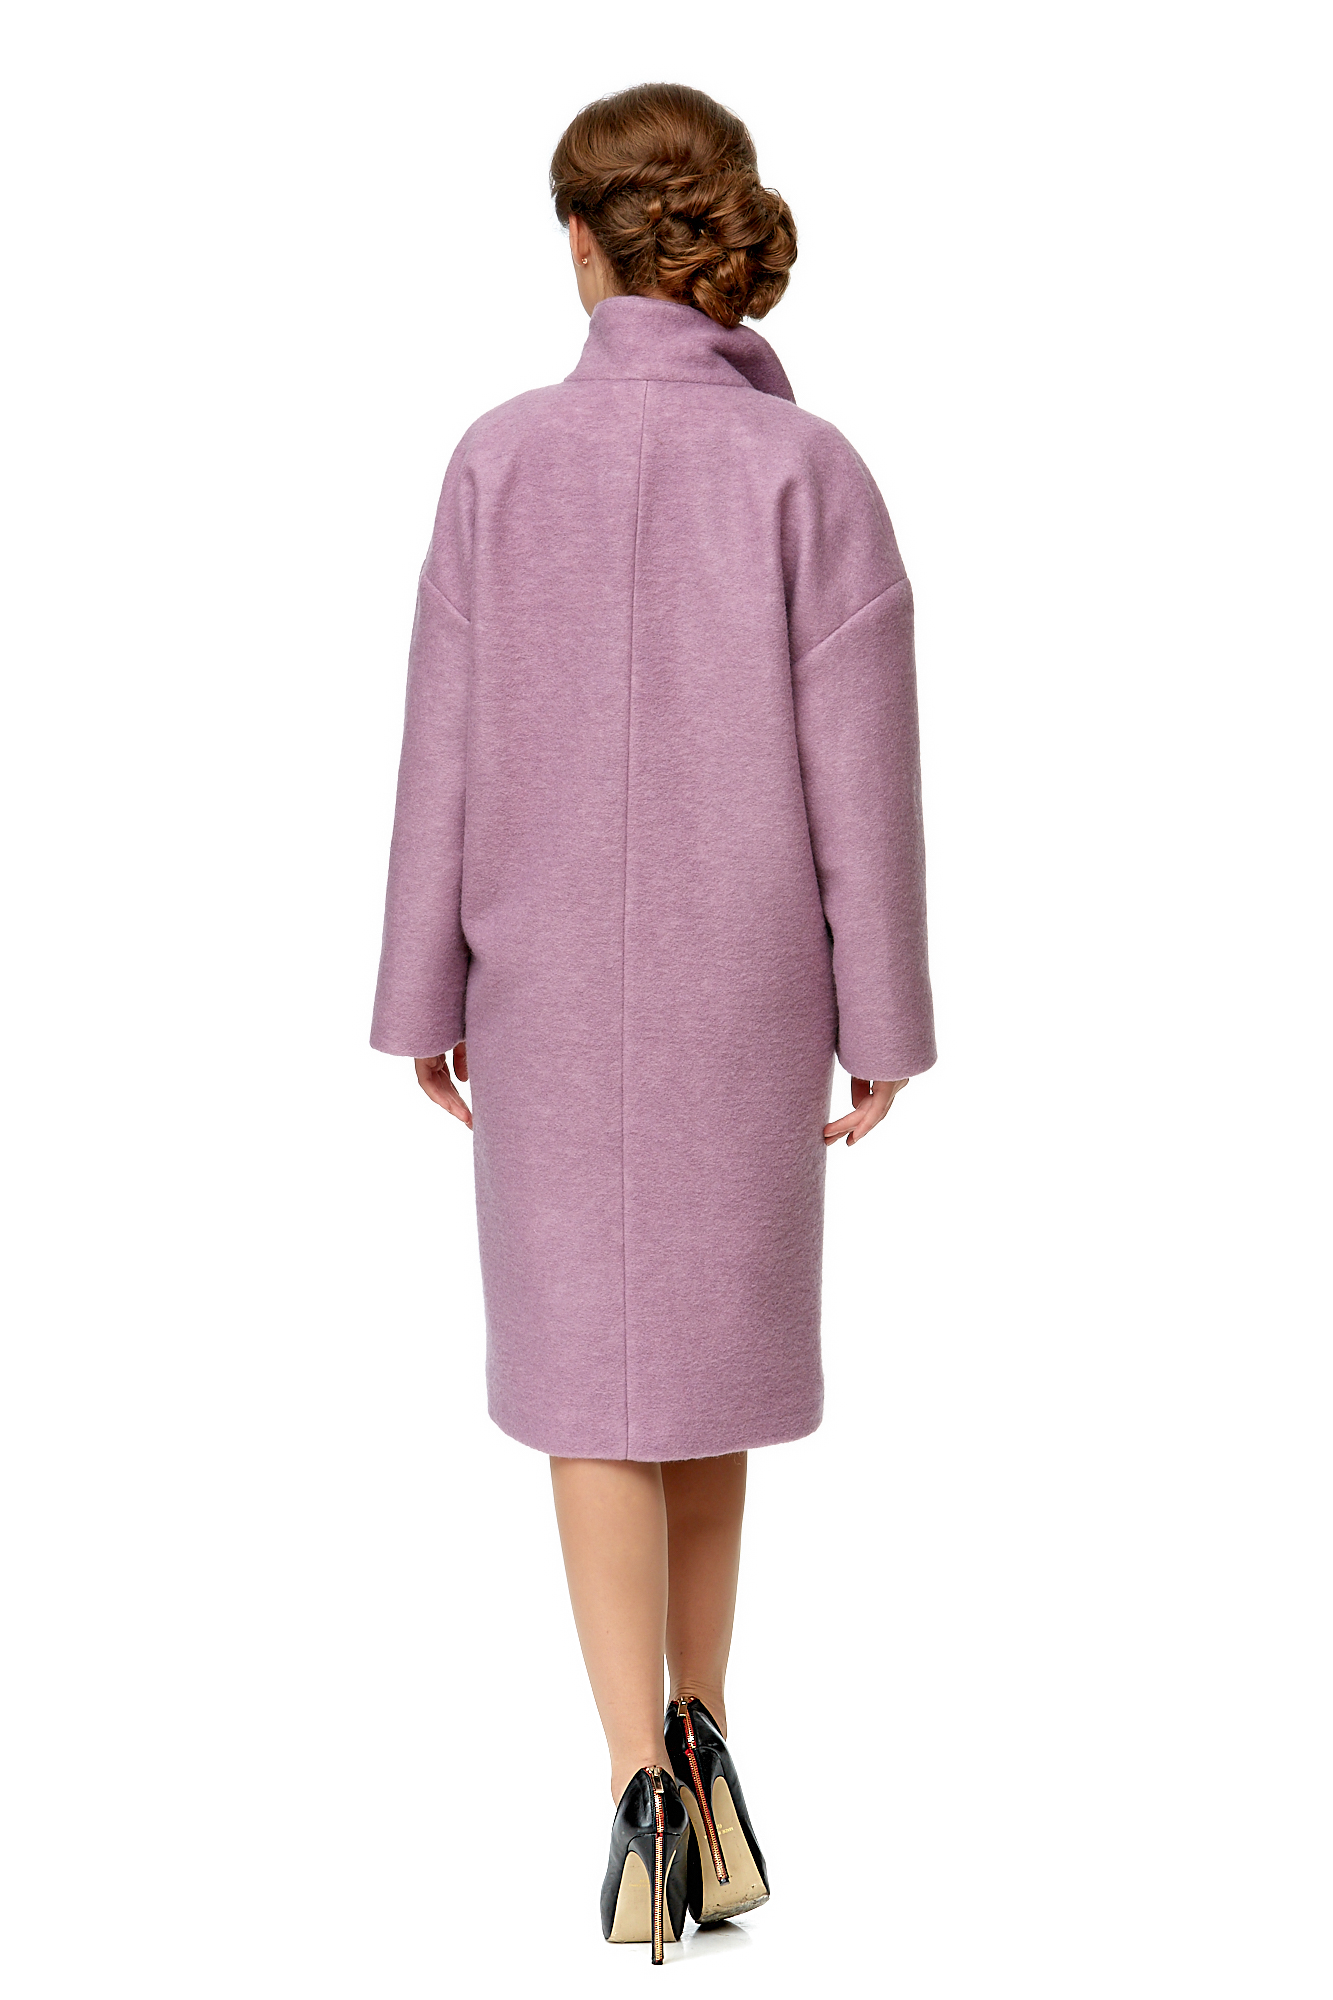 Женское пальто из текстиля с воротником 8001977-3